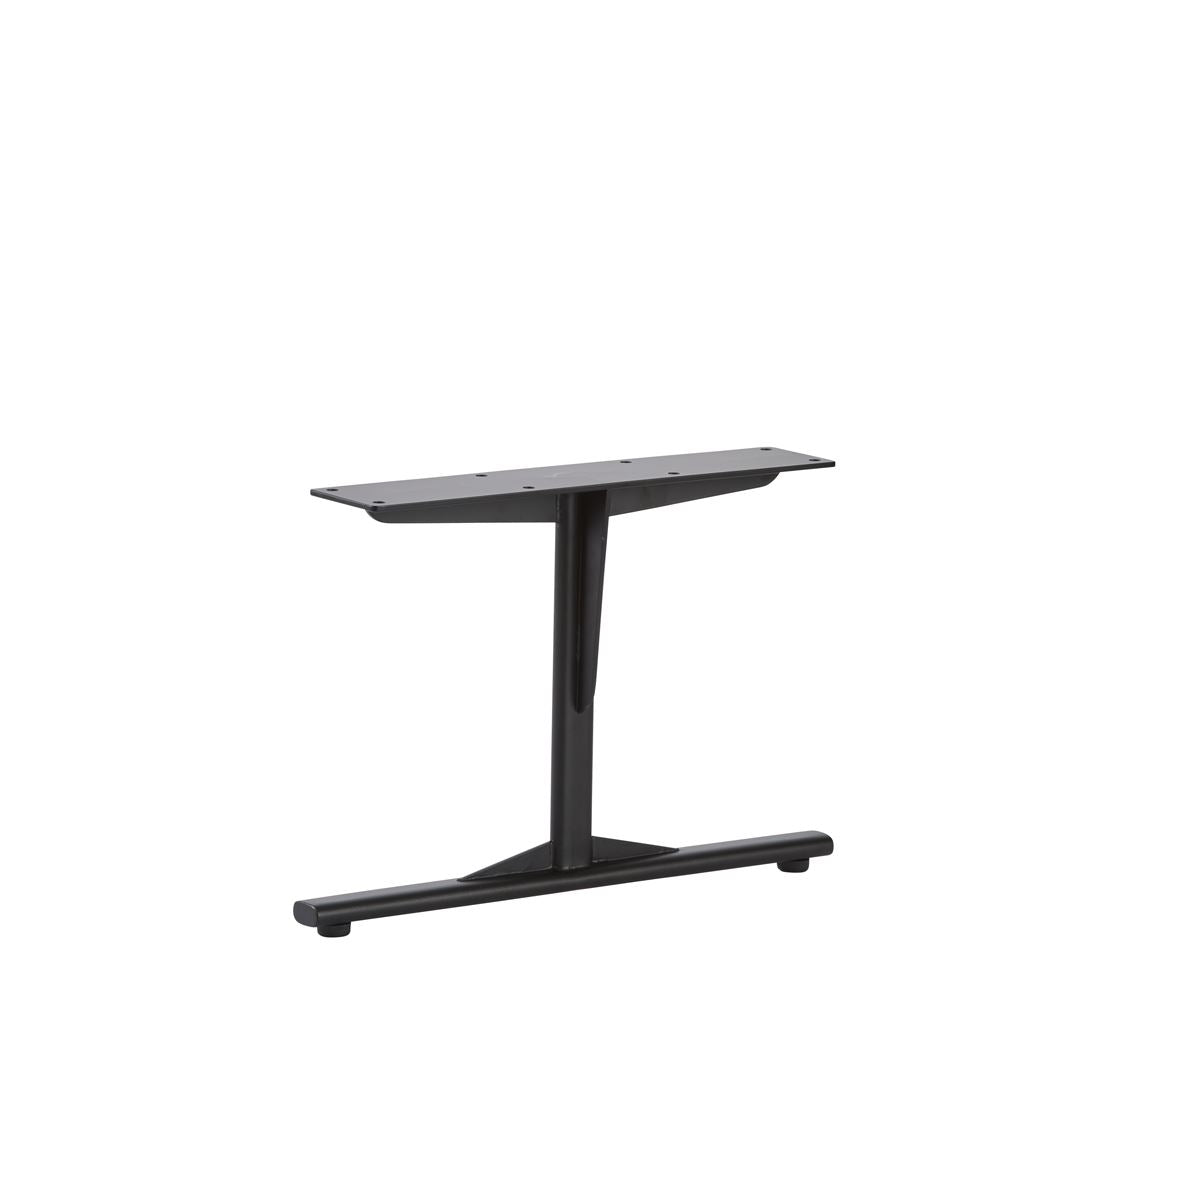 KUUM Living Table W800 × D800 - アッシュ無垢材ブラウン / クーム リビング テーブル